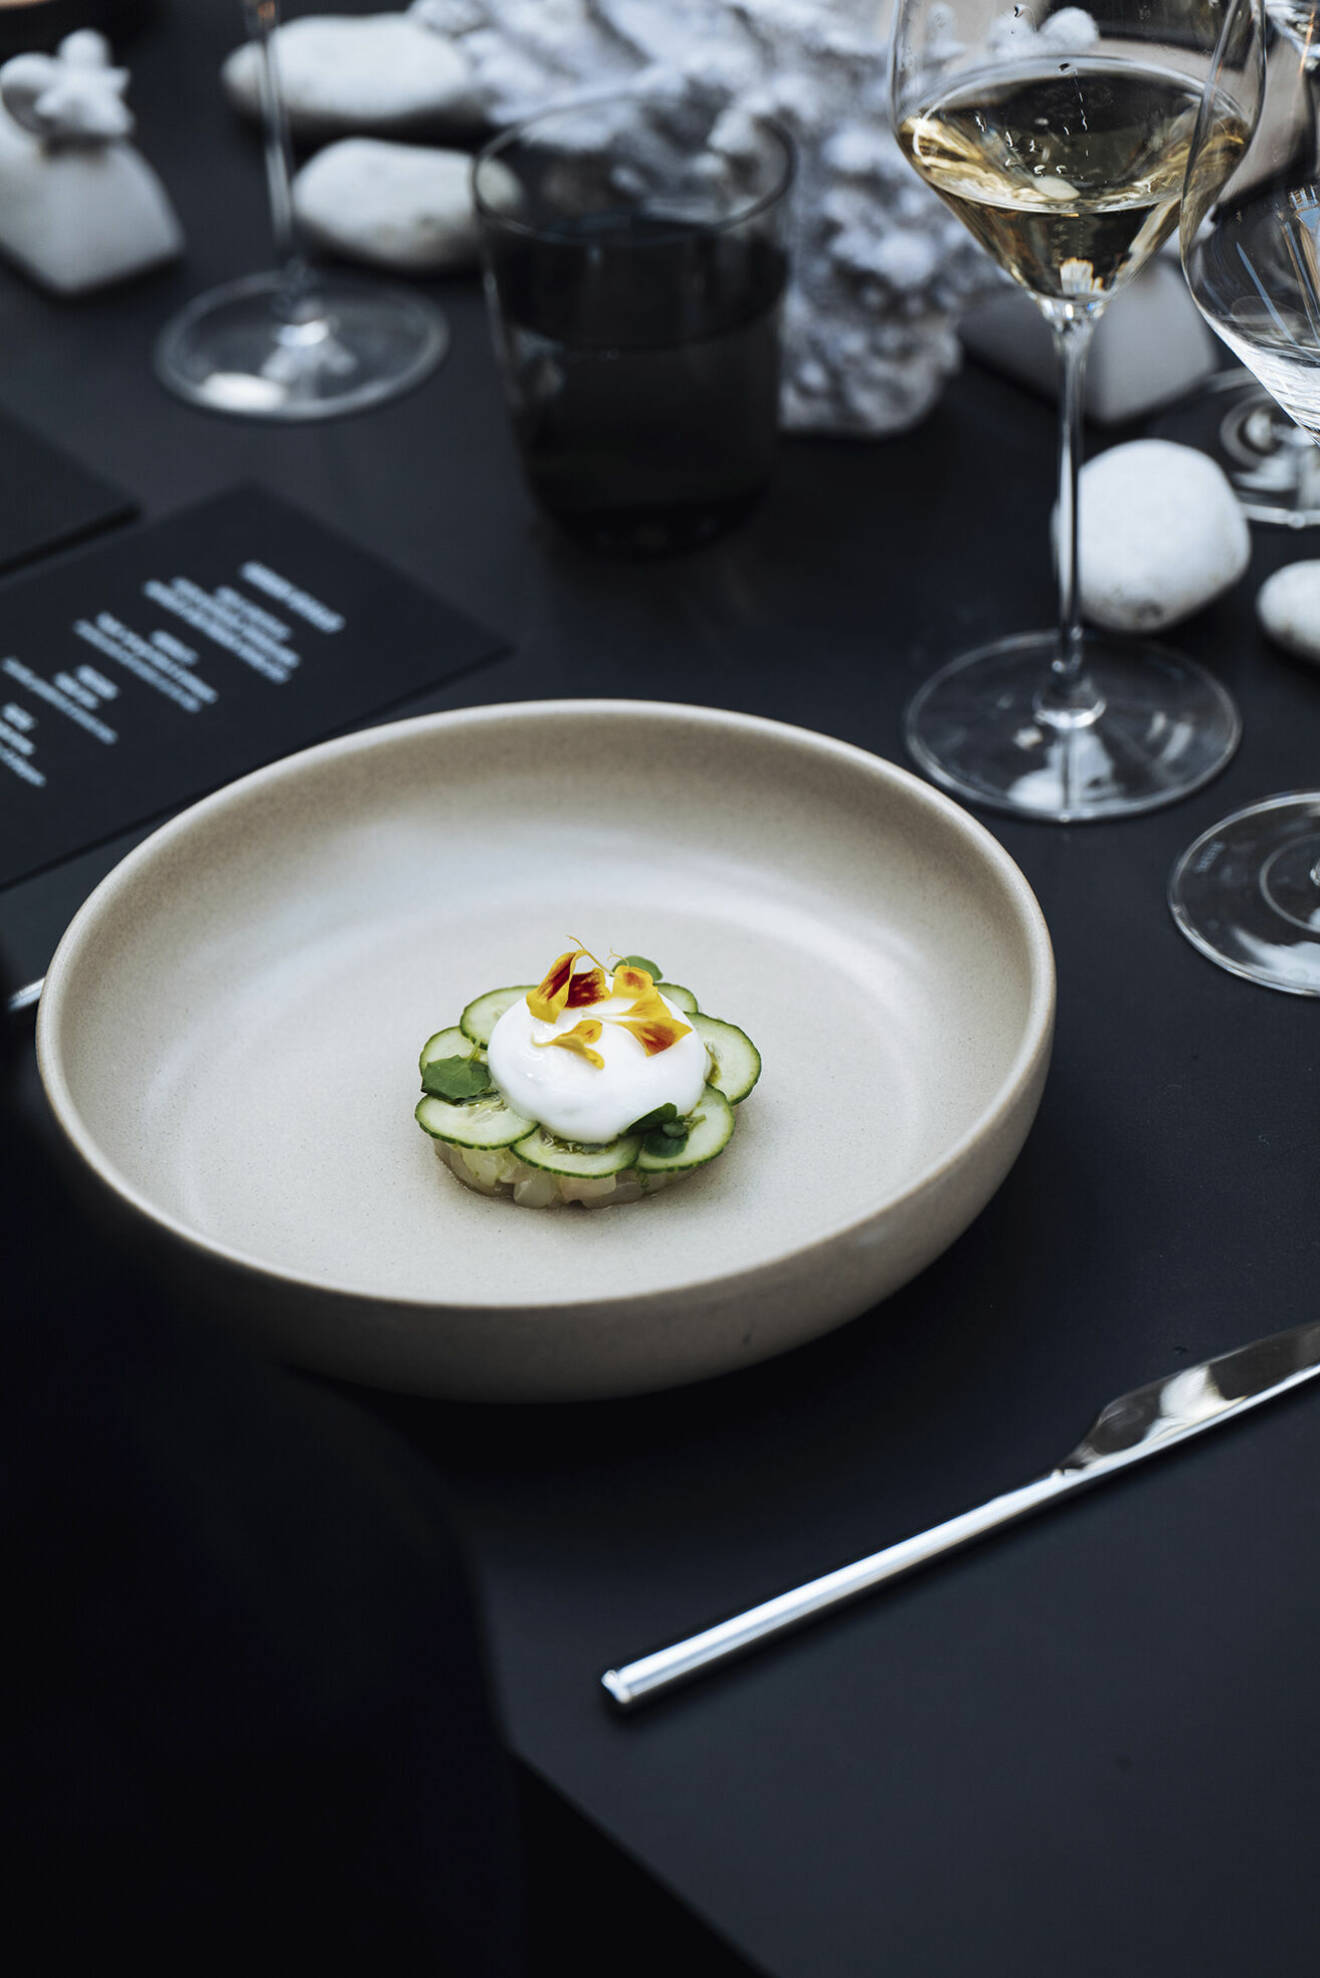 Kvällens gastronomiska meny stod Årets kock-­vinnaren Viktor Westerlind från Operakällaren för. Här är förrätten, en tartar på hälleflundra med gurka och krusbär.